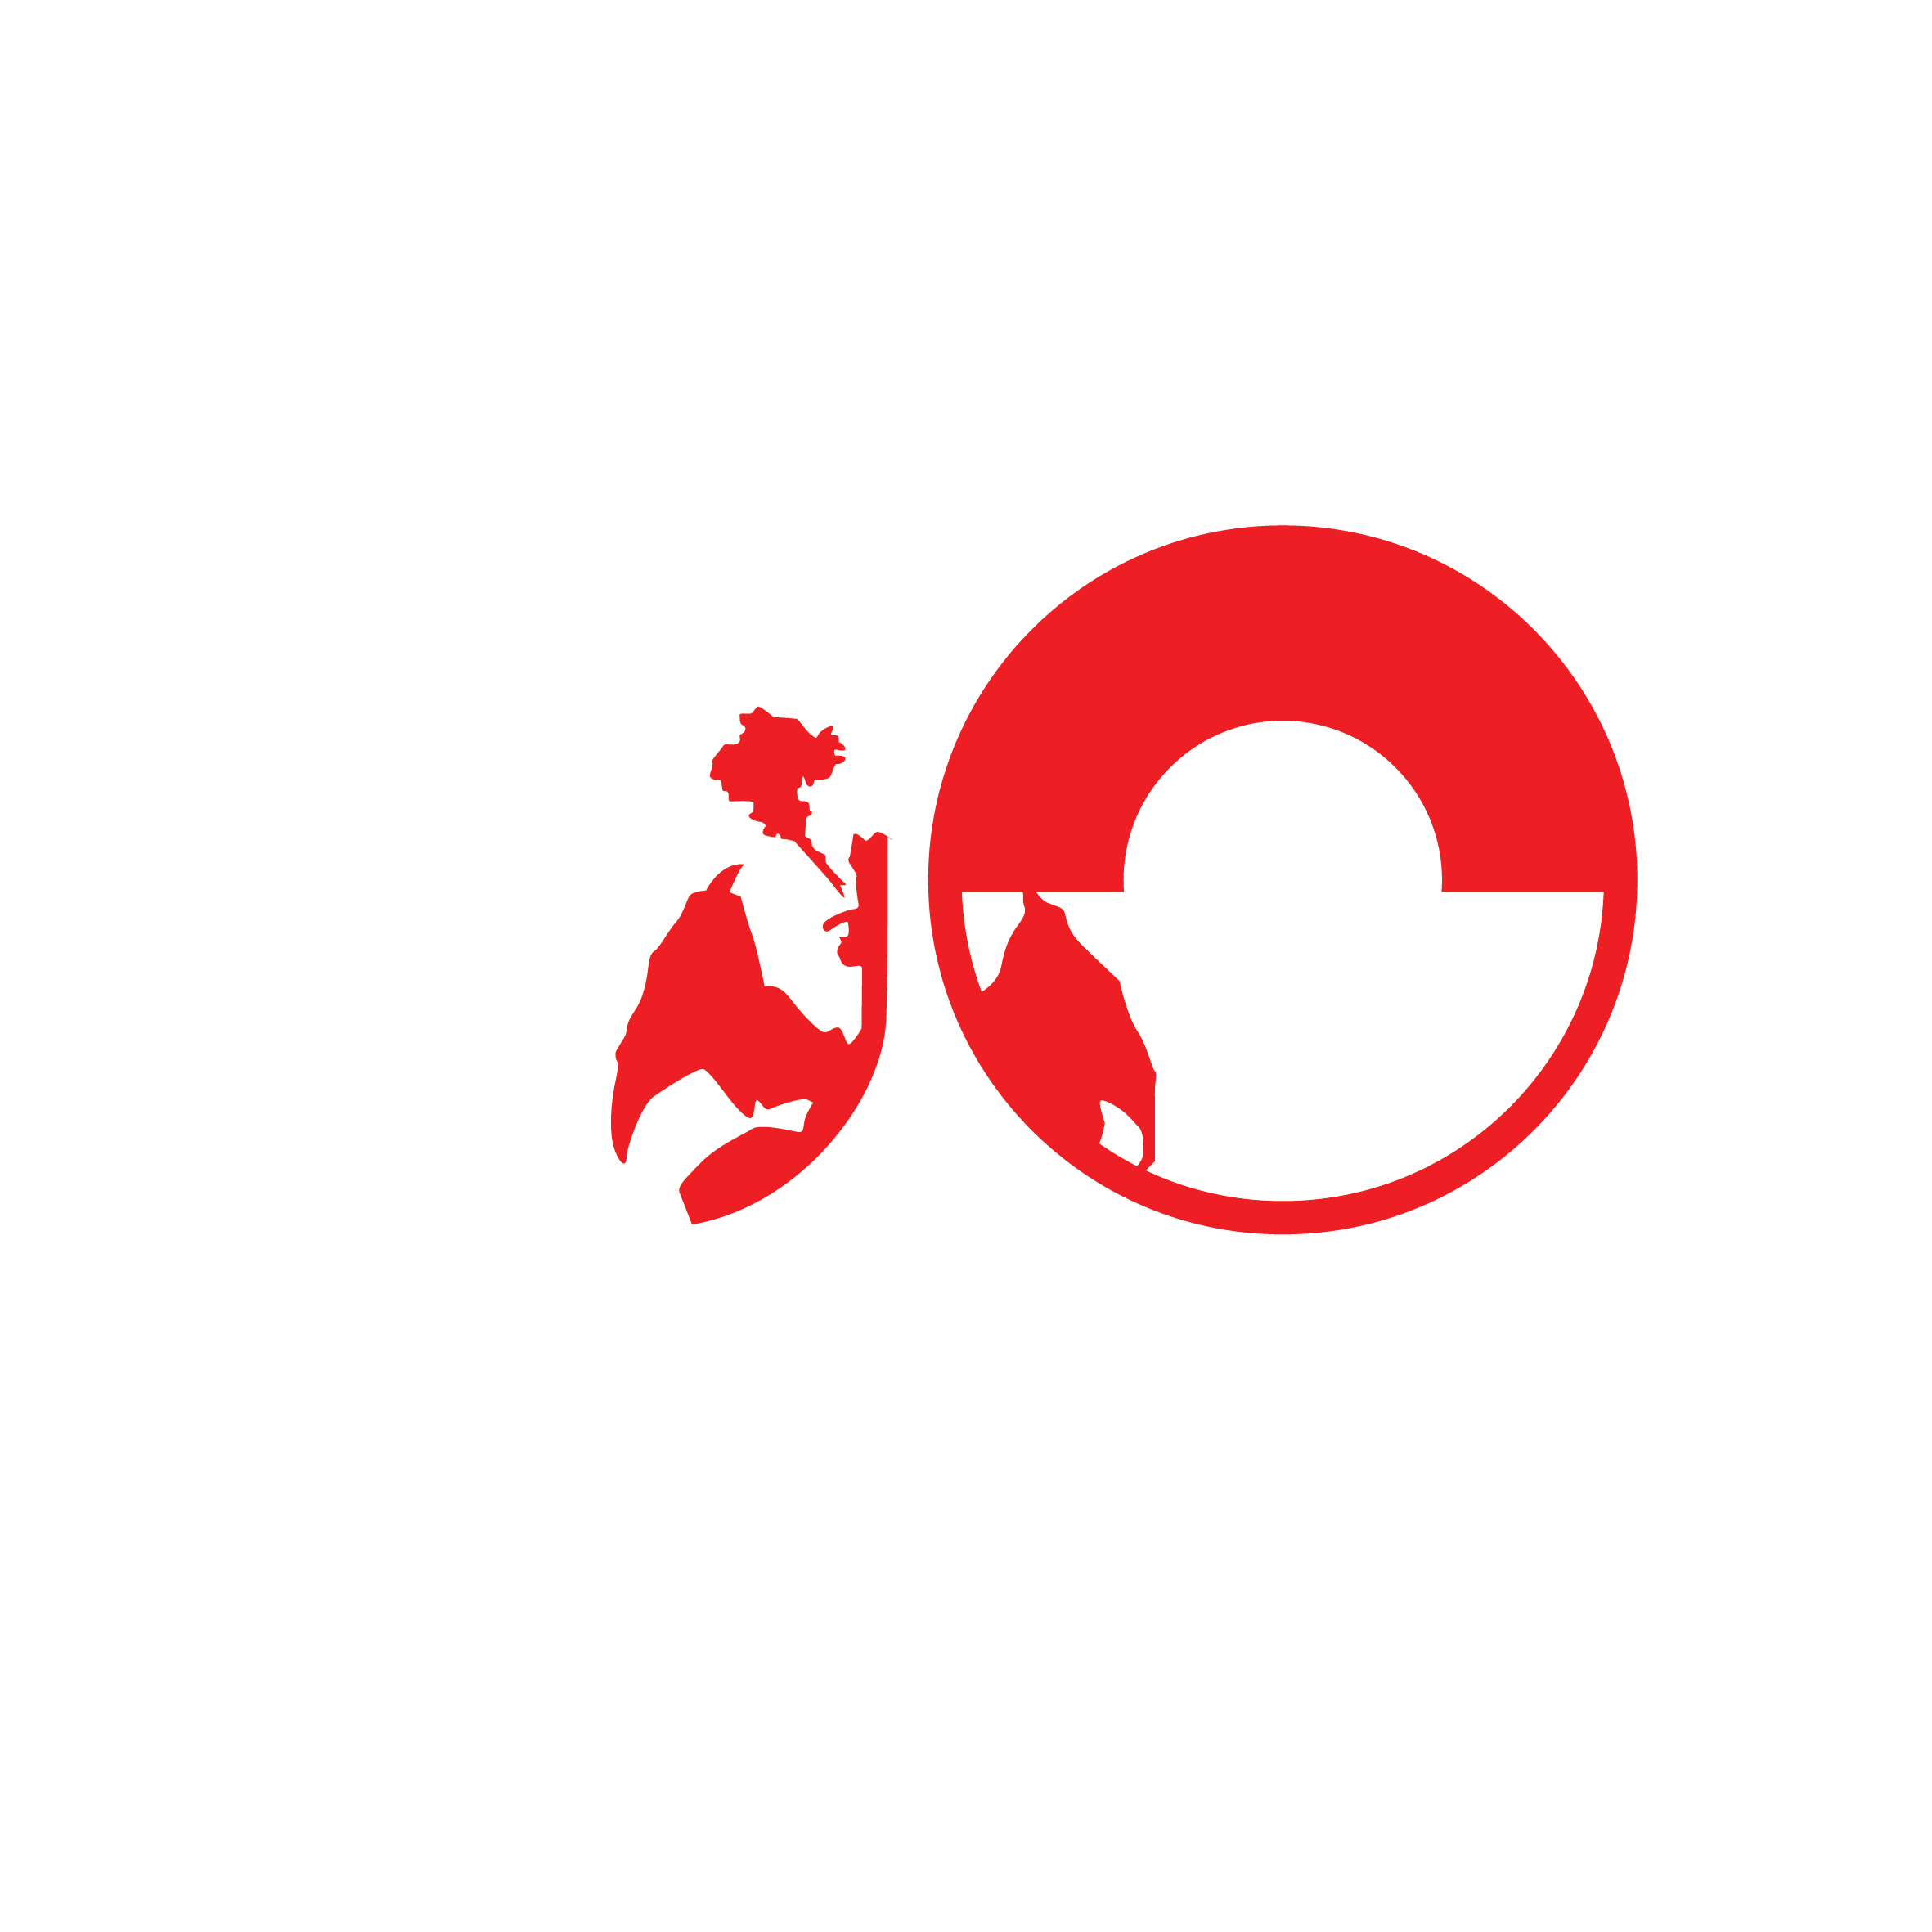 Joshua Ottawa